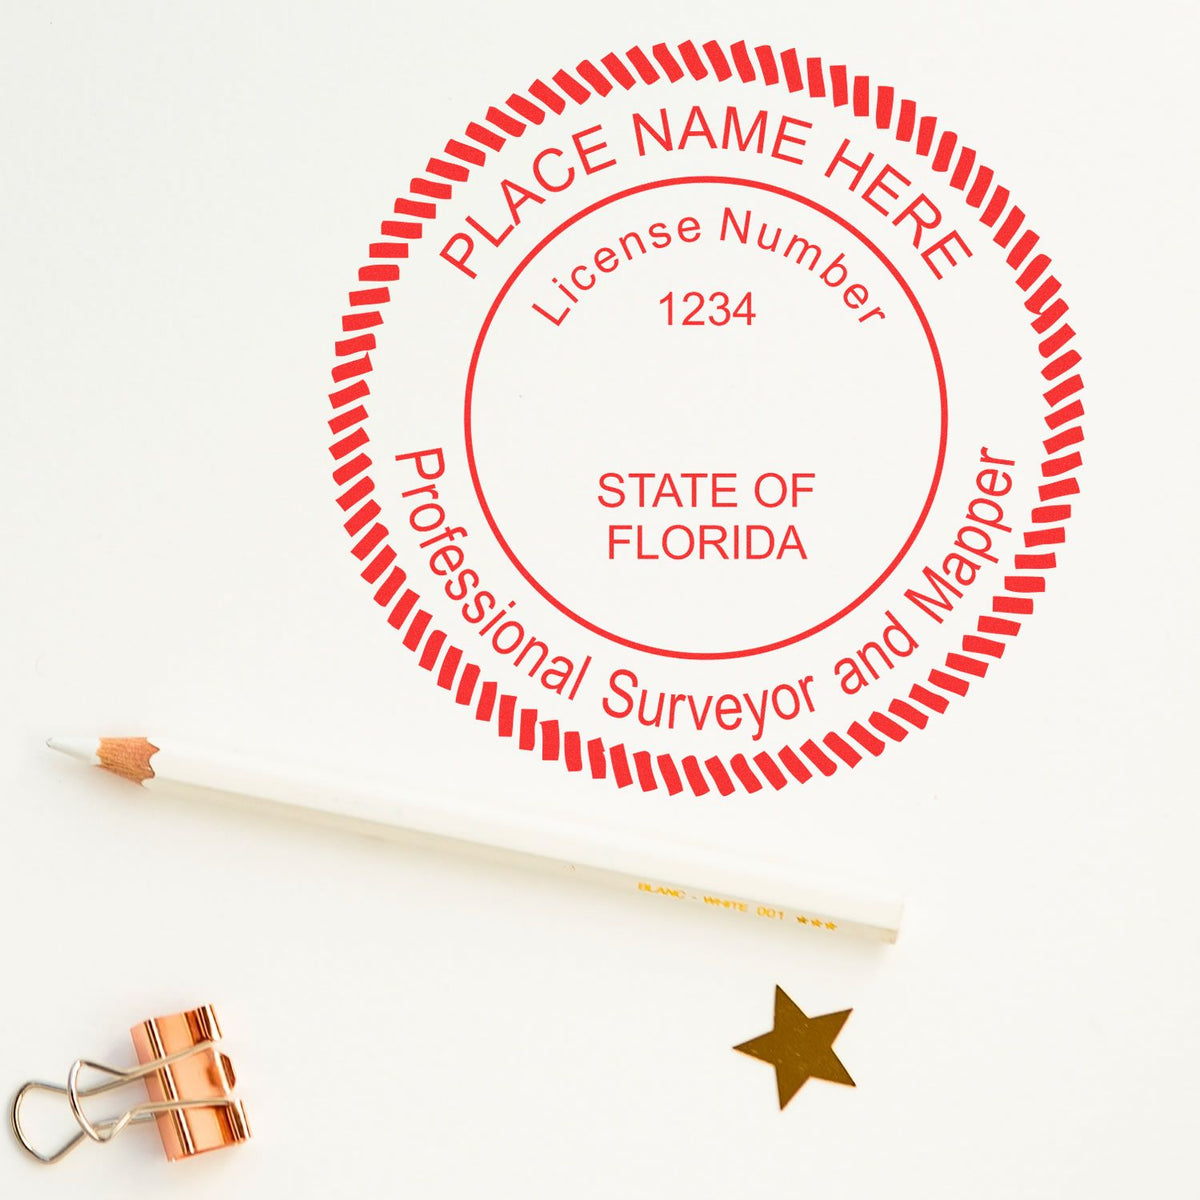 Florida Land Surveyor Seal Stamp In Use Photo